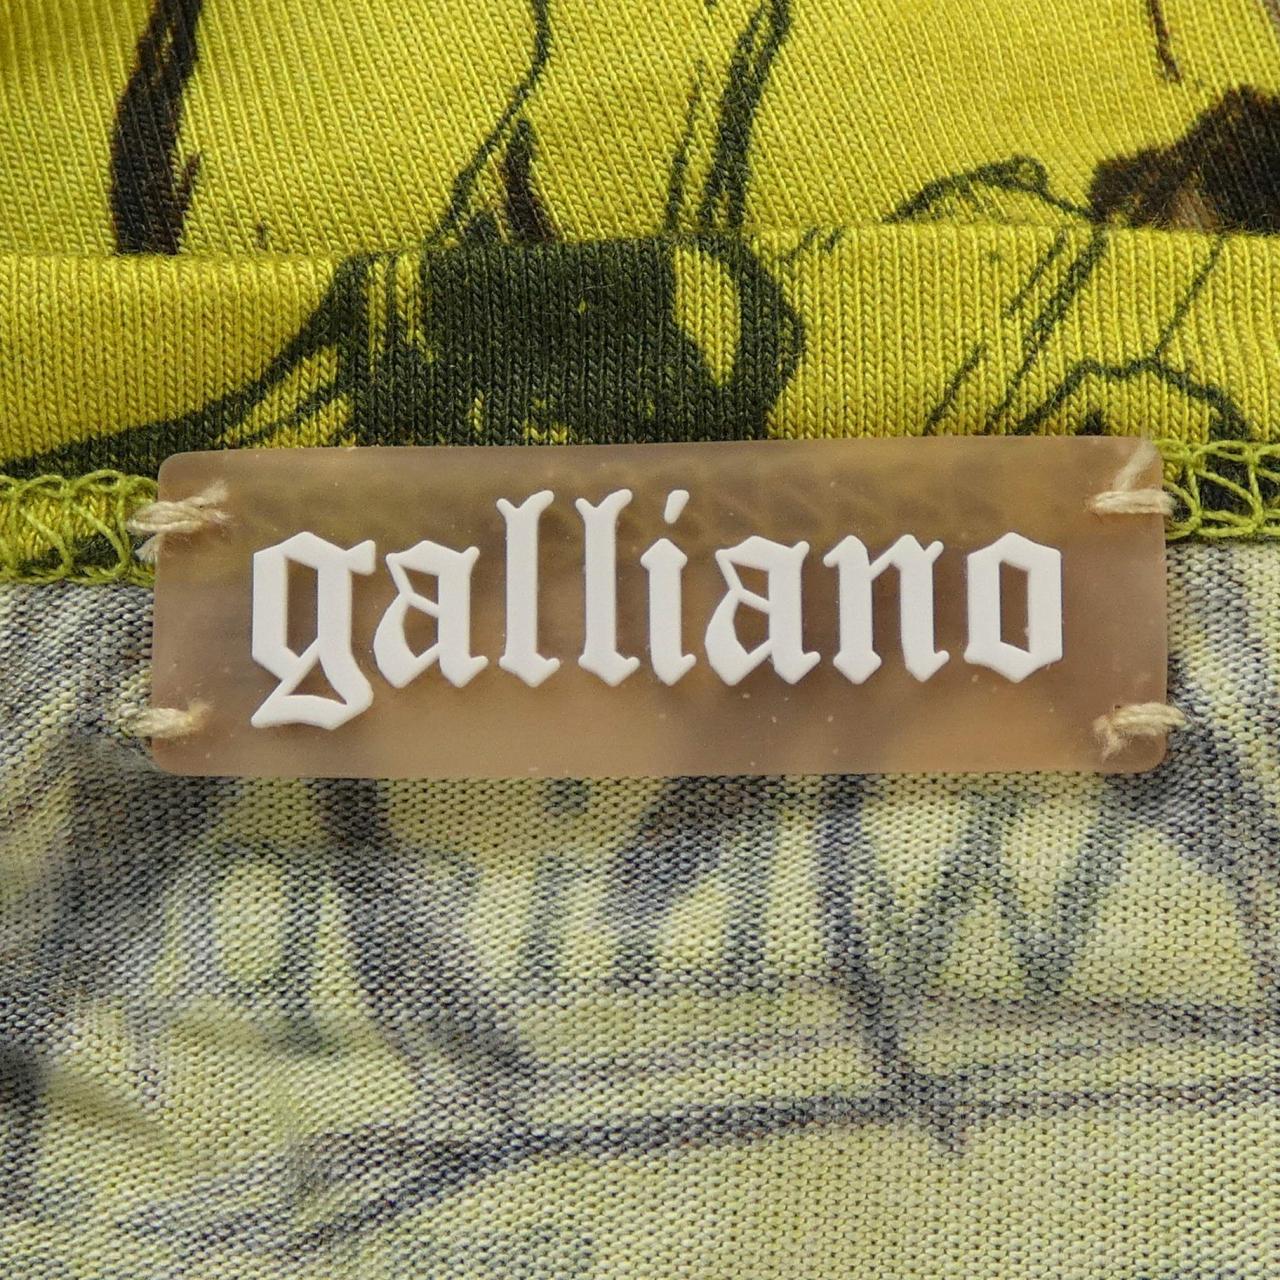 【ヴィンテージ】ガリアーノ GALLIANO Tシャツ